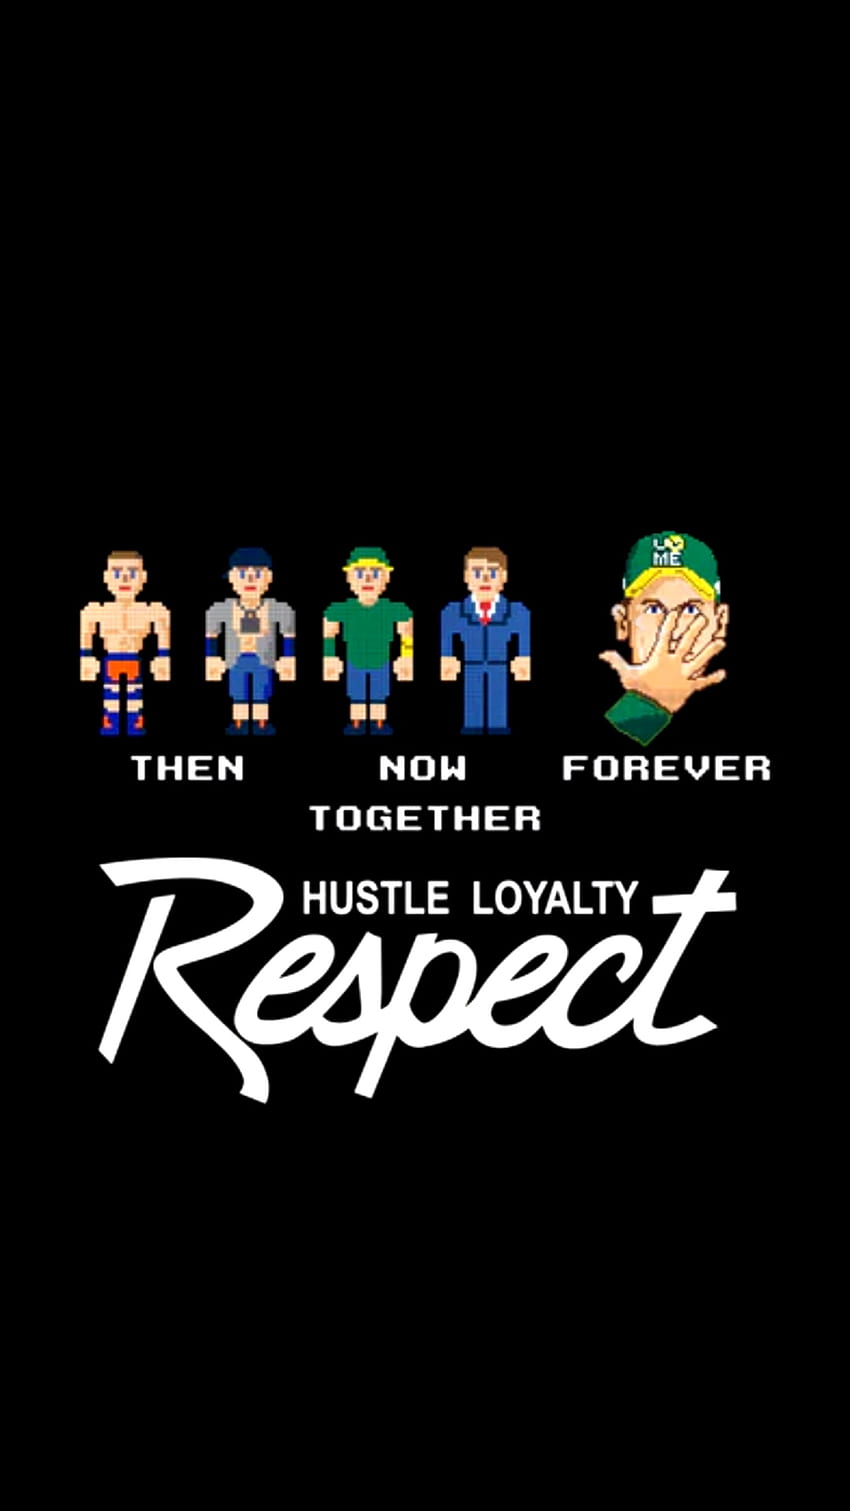 Watch WWE: John Cena: Hustle, Loyalty, Respect, hustle loyalty respect HD  wallpaper | Pxfuel